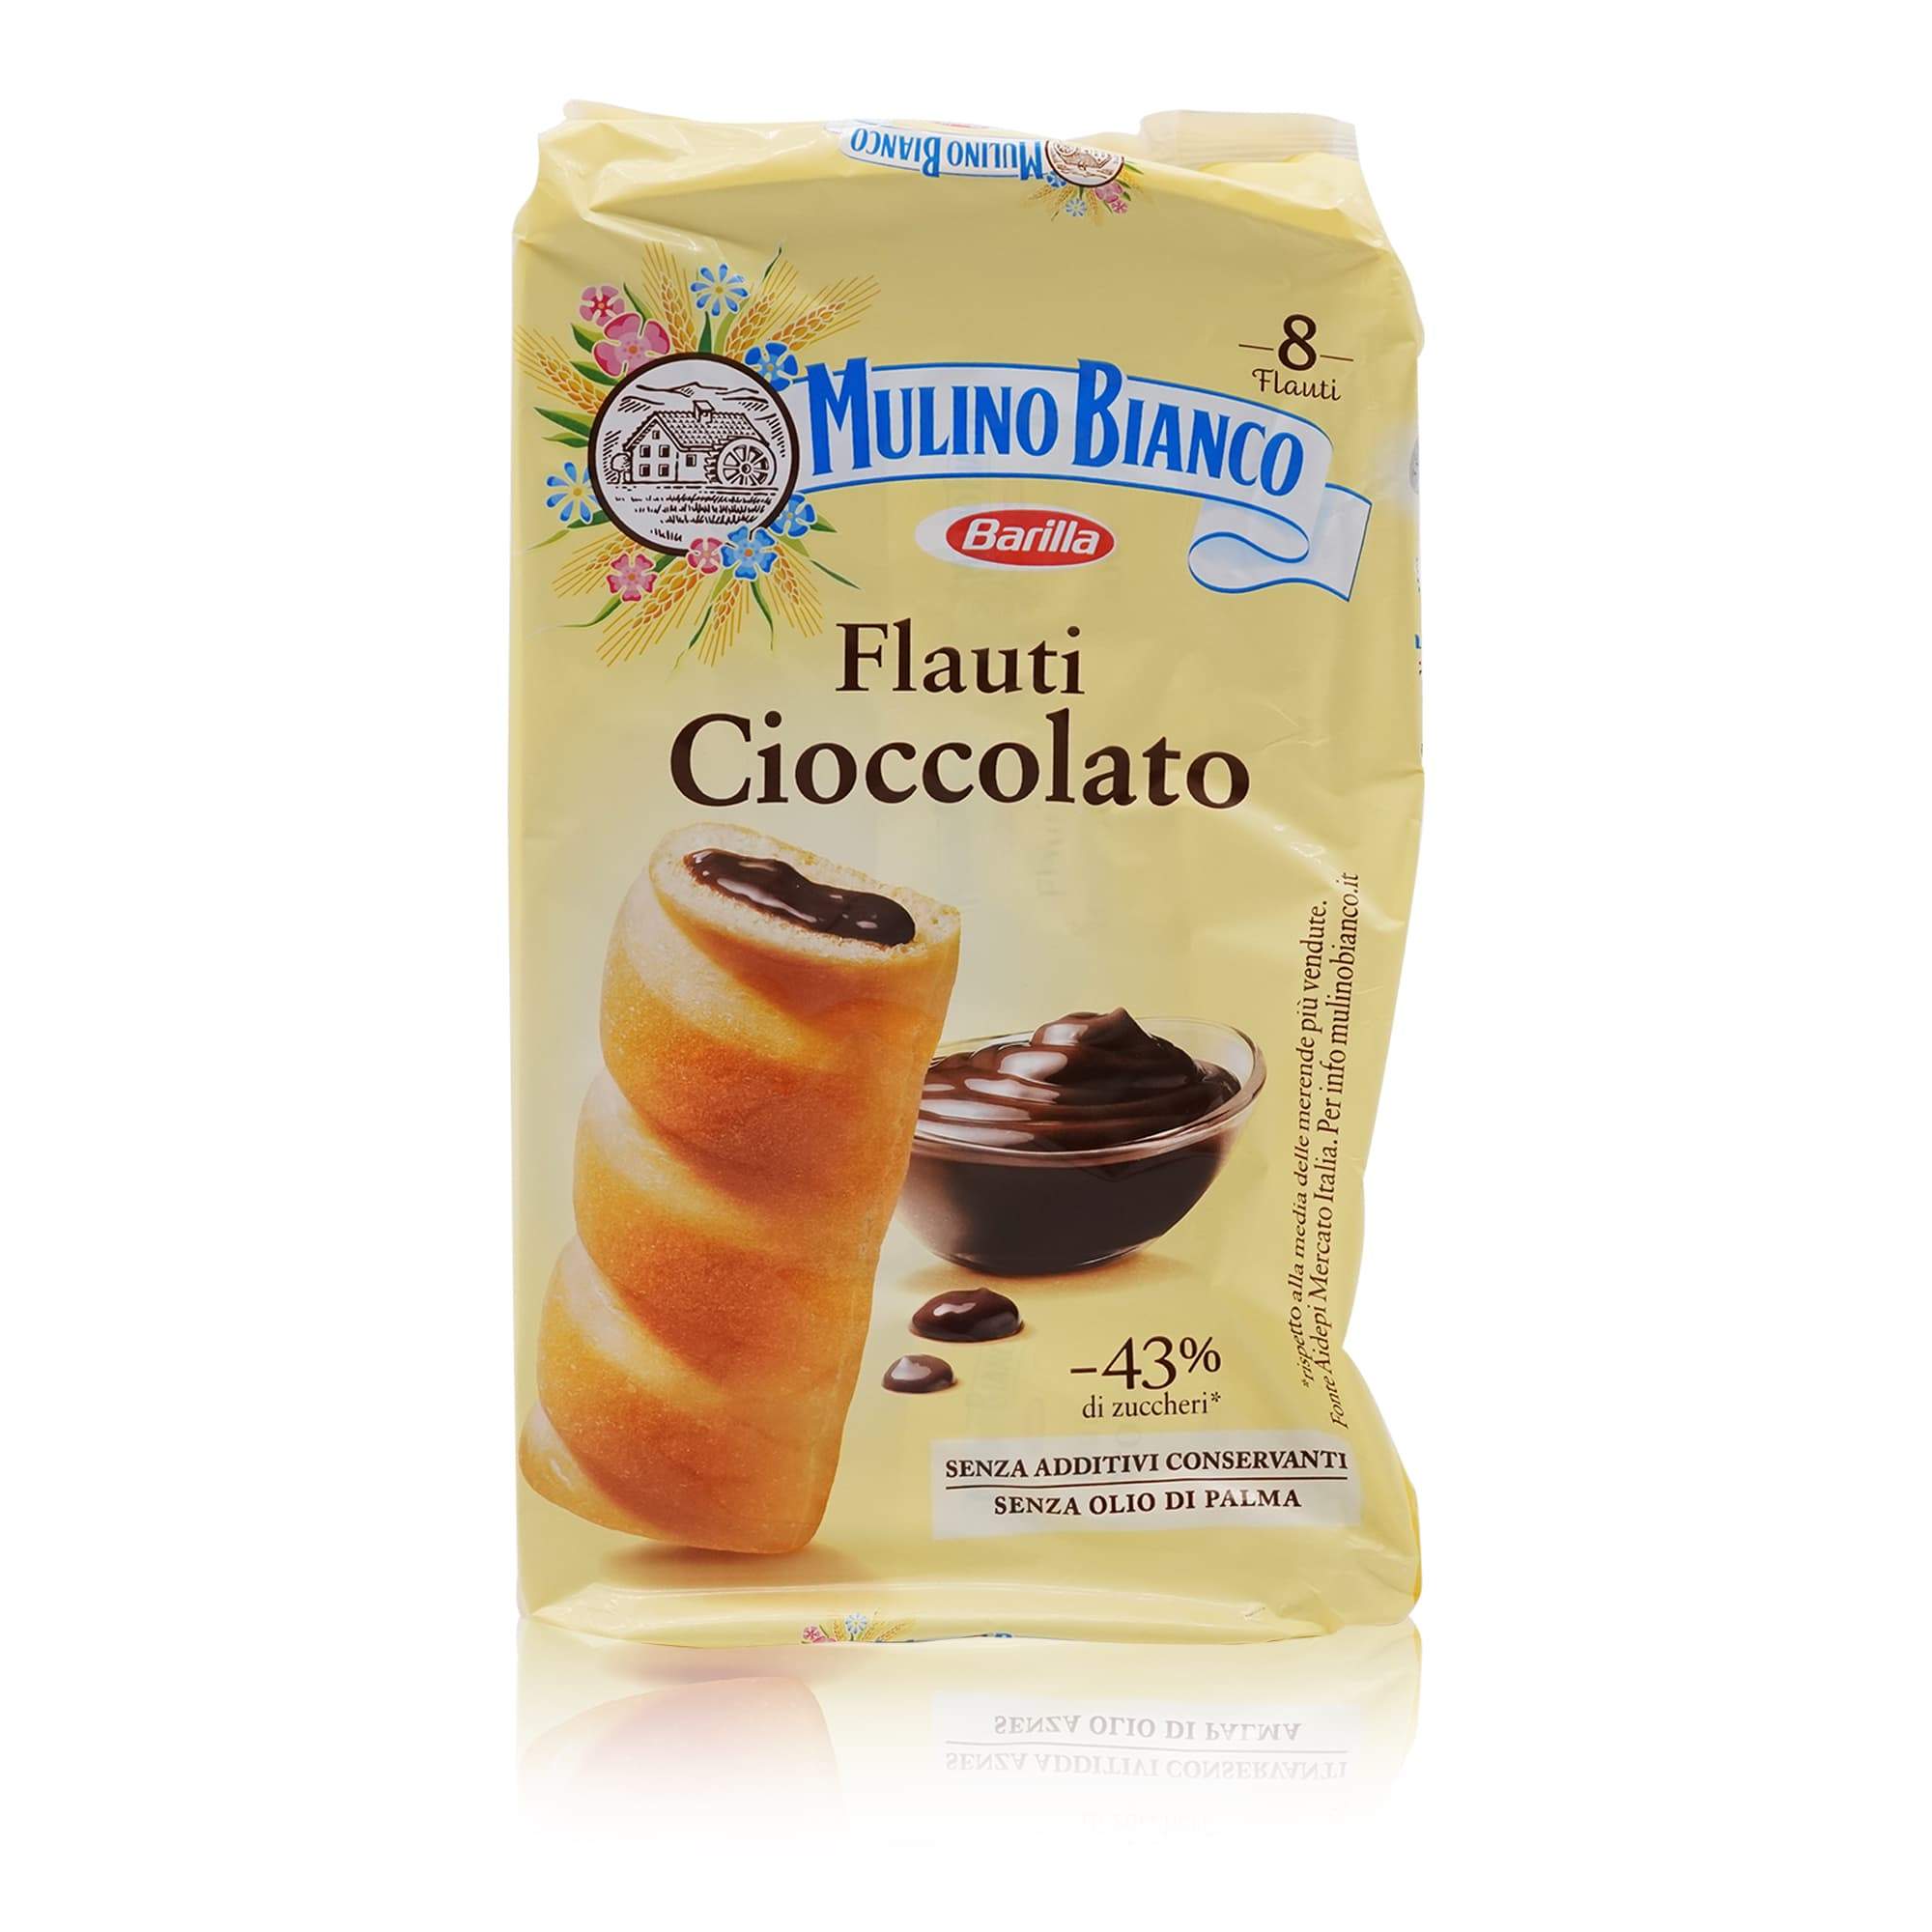 MULINO BIANCO Flauti al Cioccolato – Flauti Küchlein mit Schokofüllung - 0,280kg - italienisch-einkaufen.de